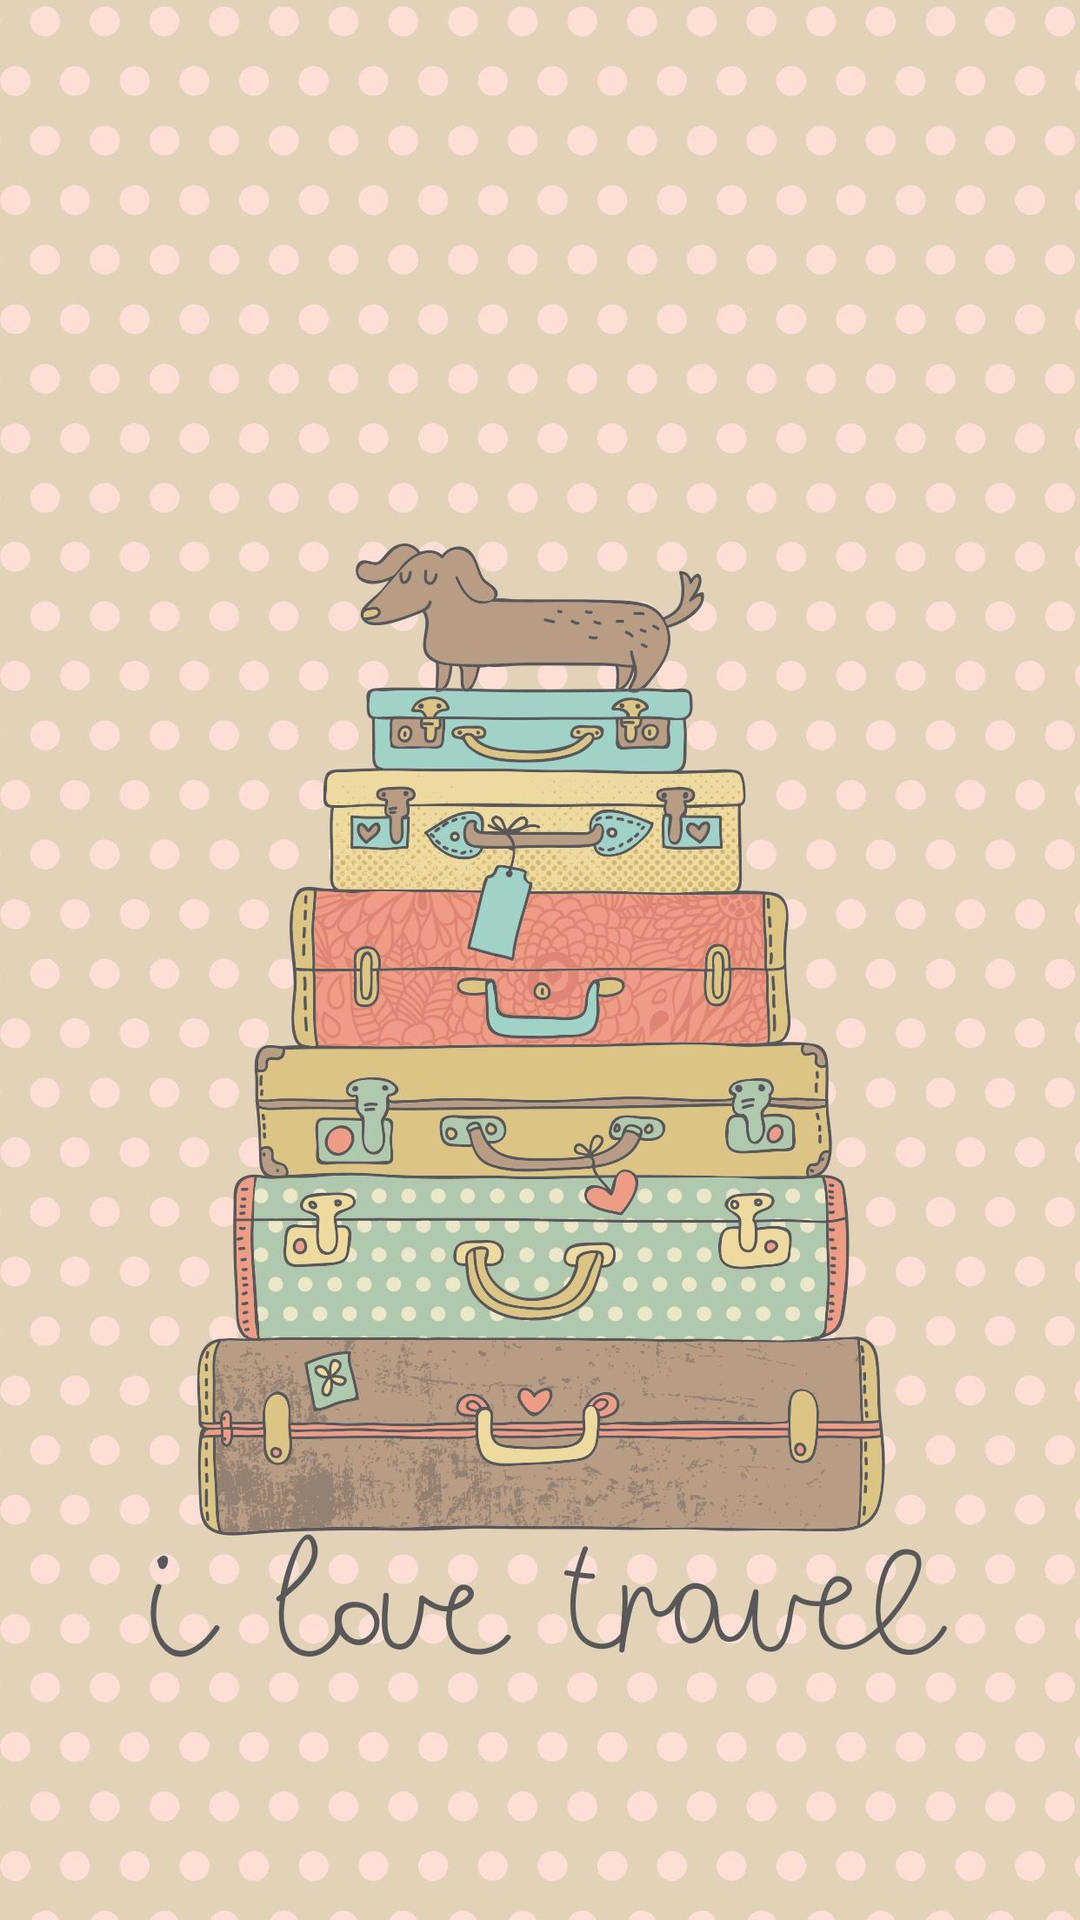 Et stak af kufferter med en hund øverst Wallpaper